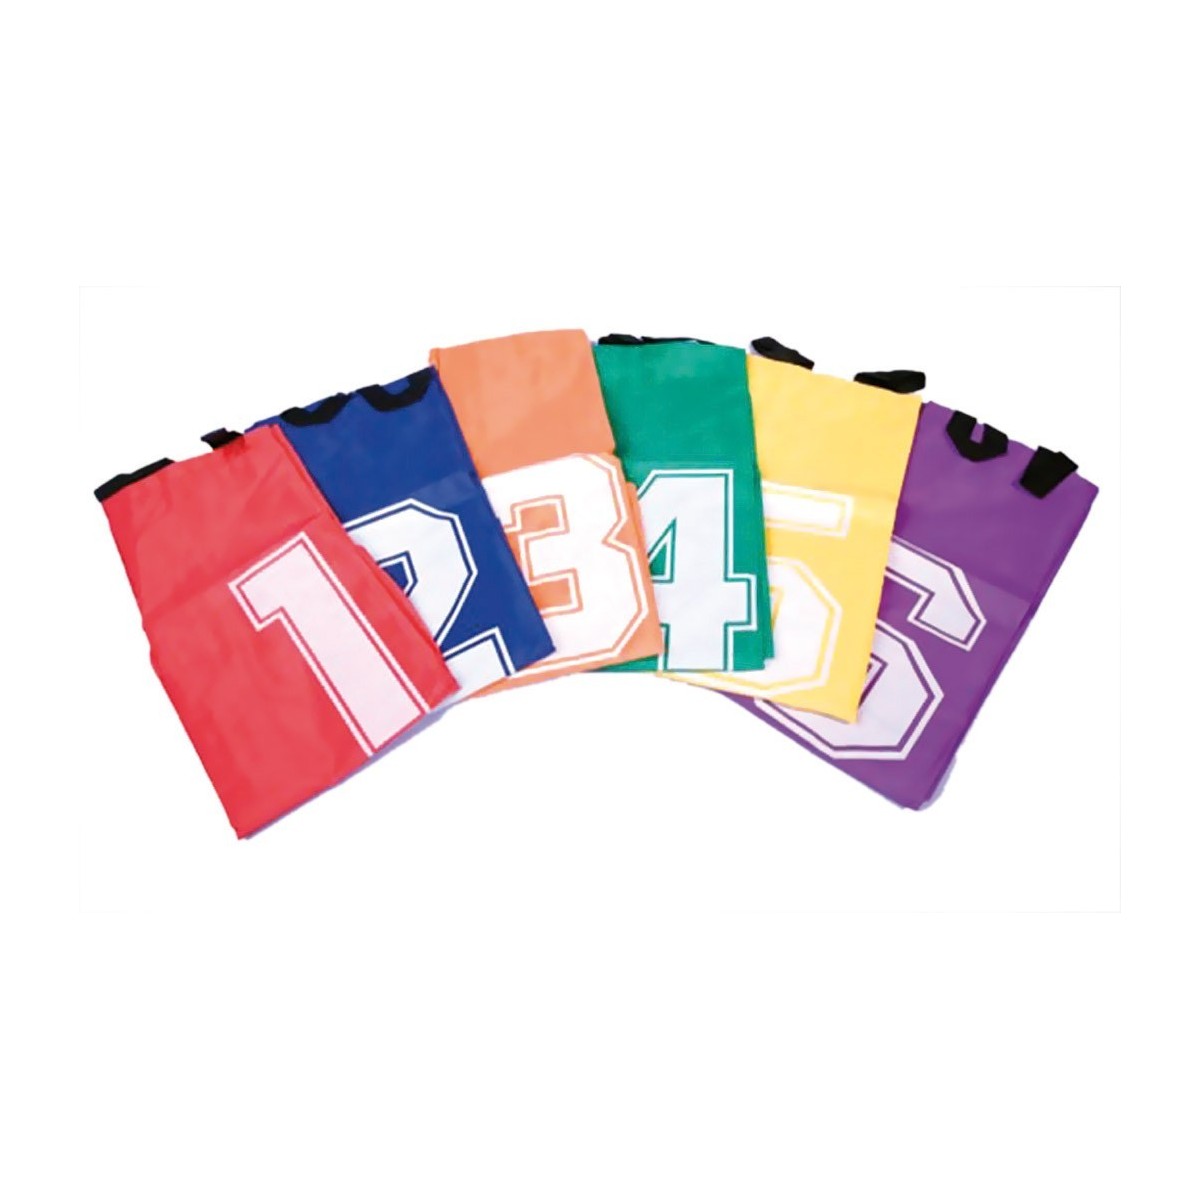 6 sacs de course en sac - 1 - Kit  de 6 sacs de course en sac composé de sacs de différentes couleurs numérotés de 1 à 6.
Les s